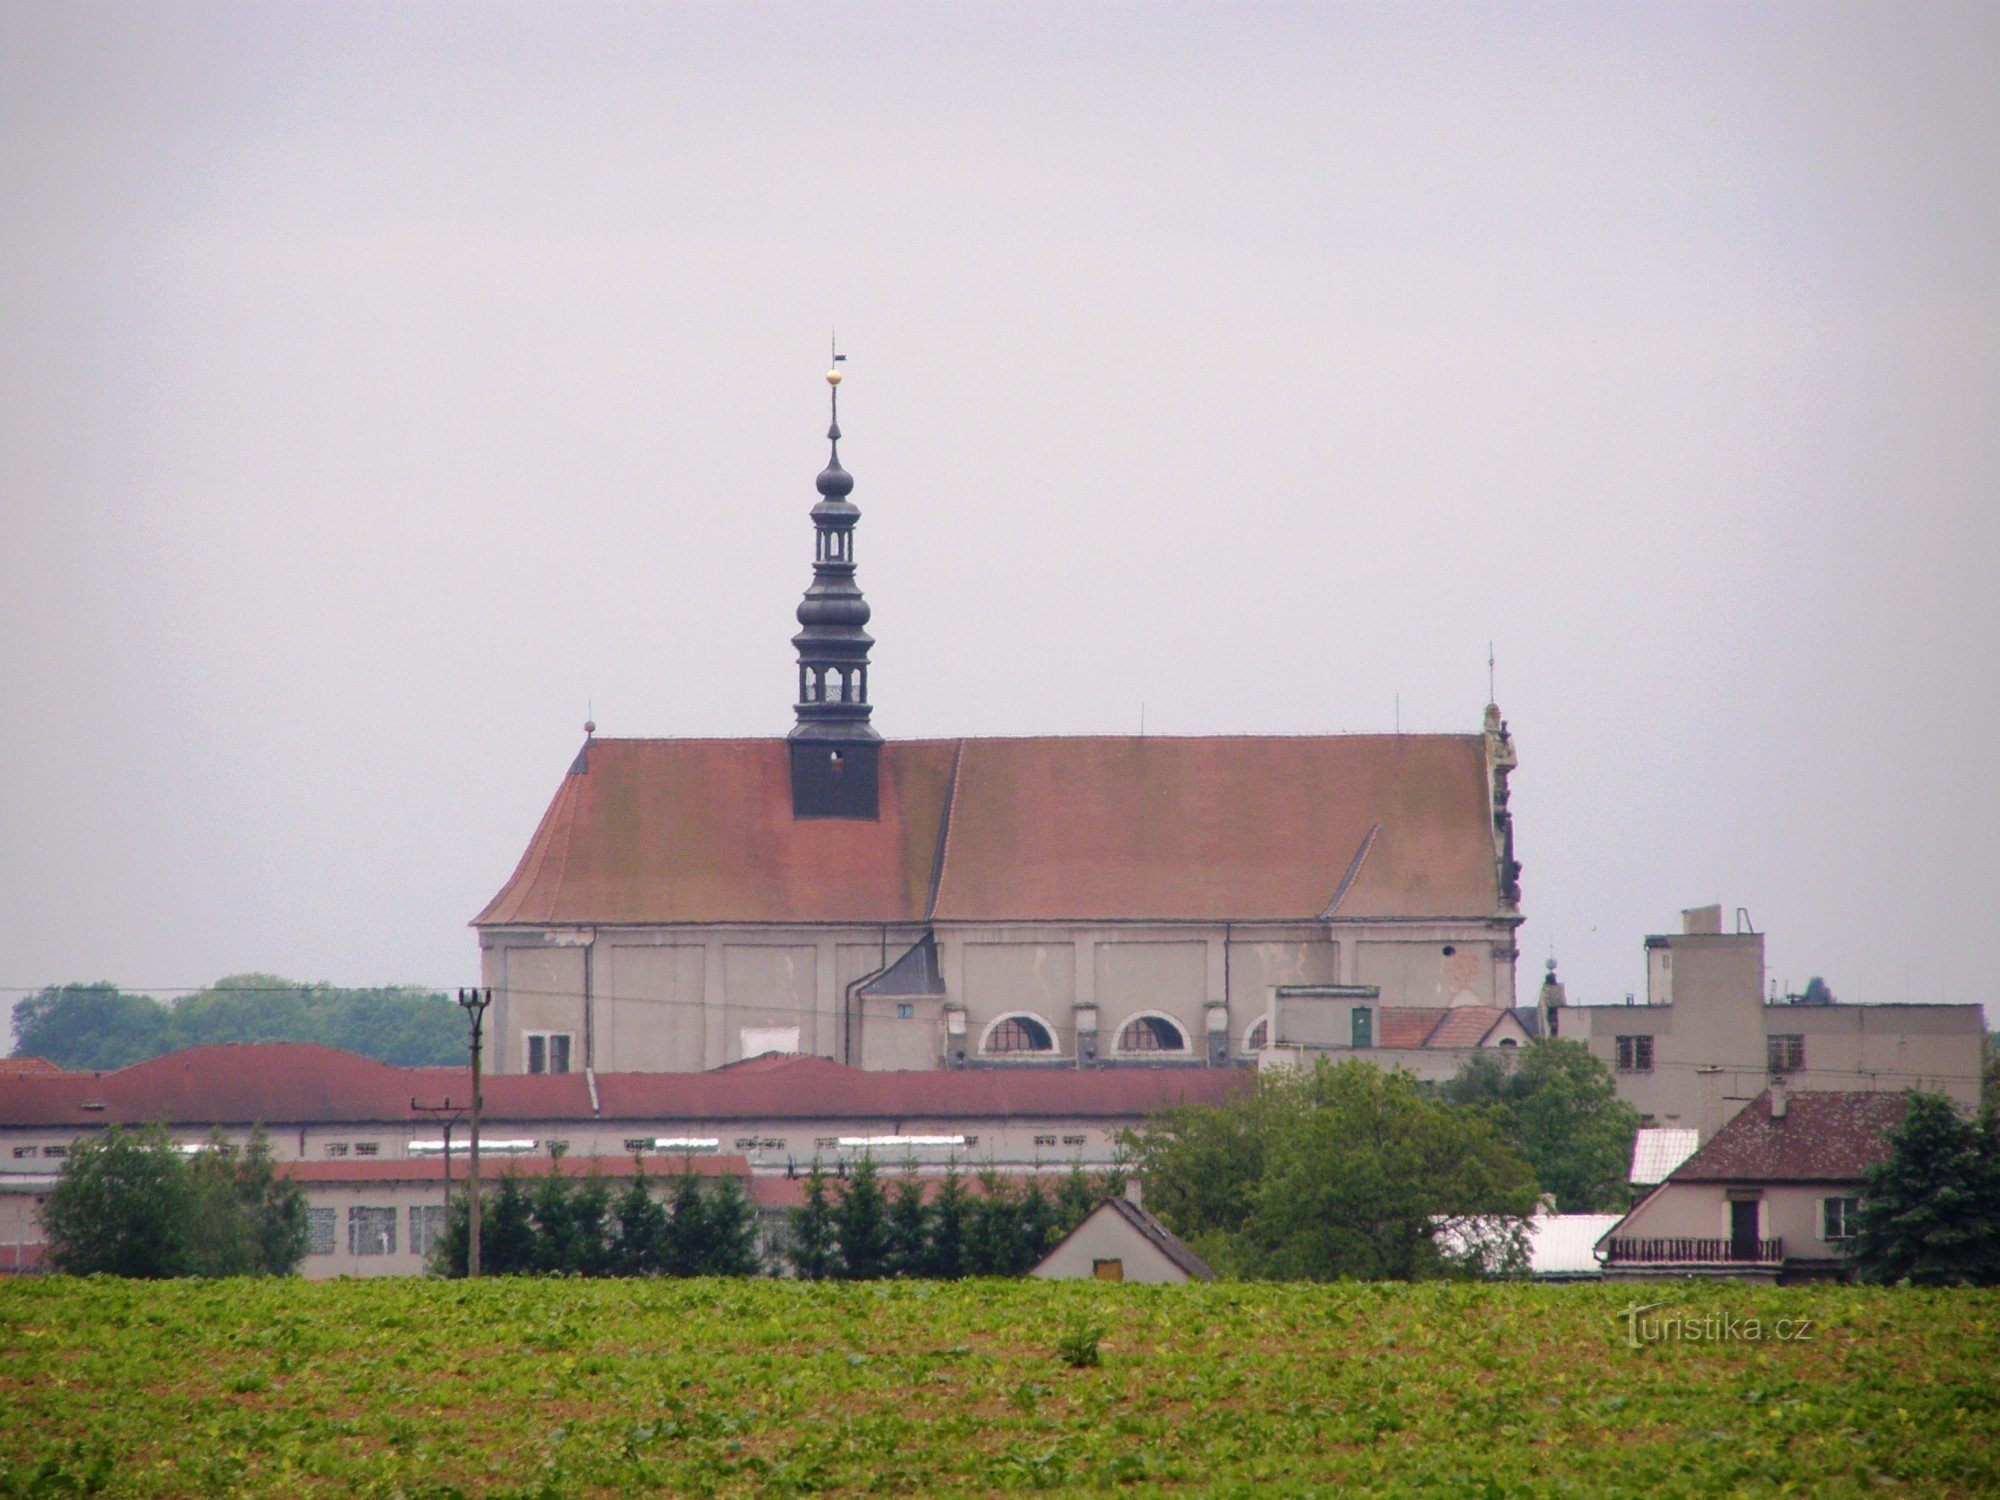 Valdice - kartuzijanski samostan (kartuzijanci)